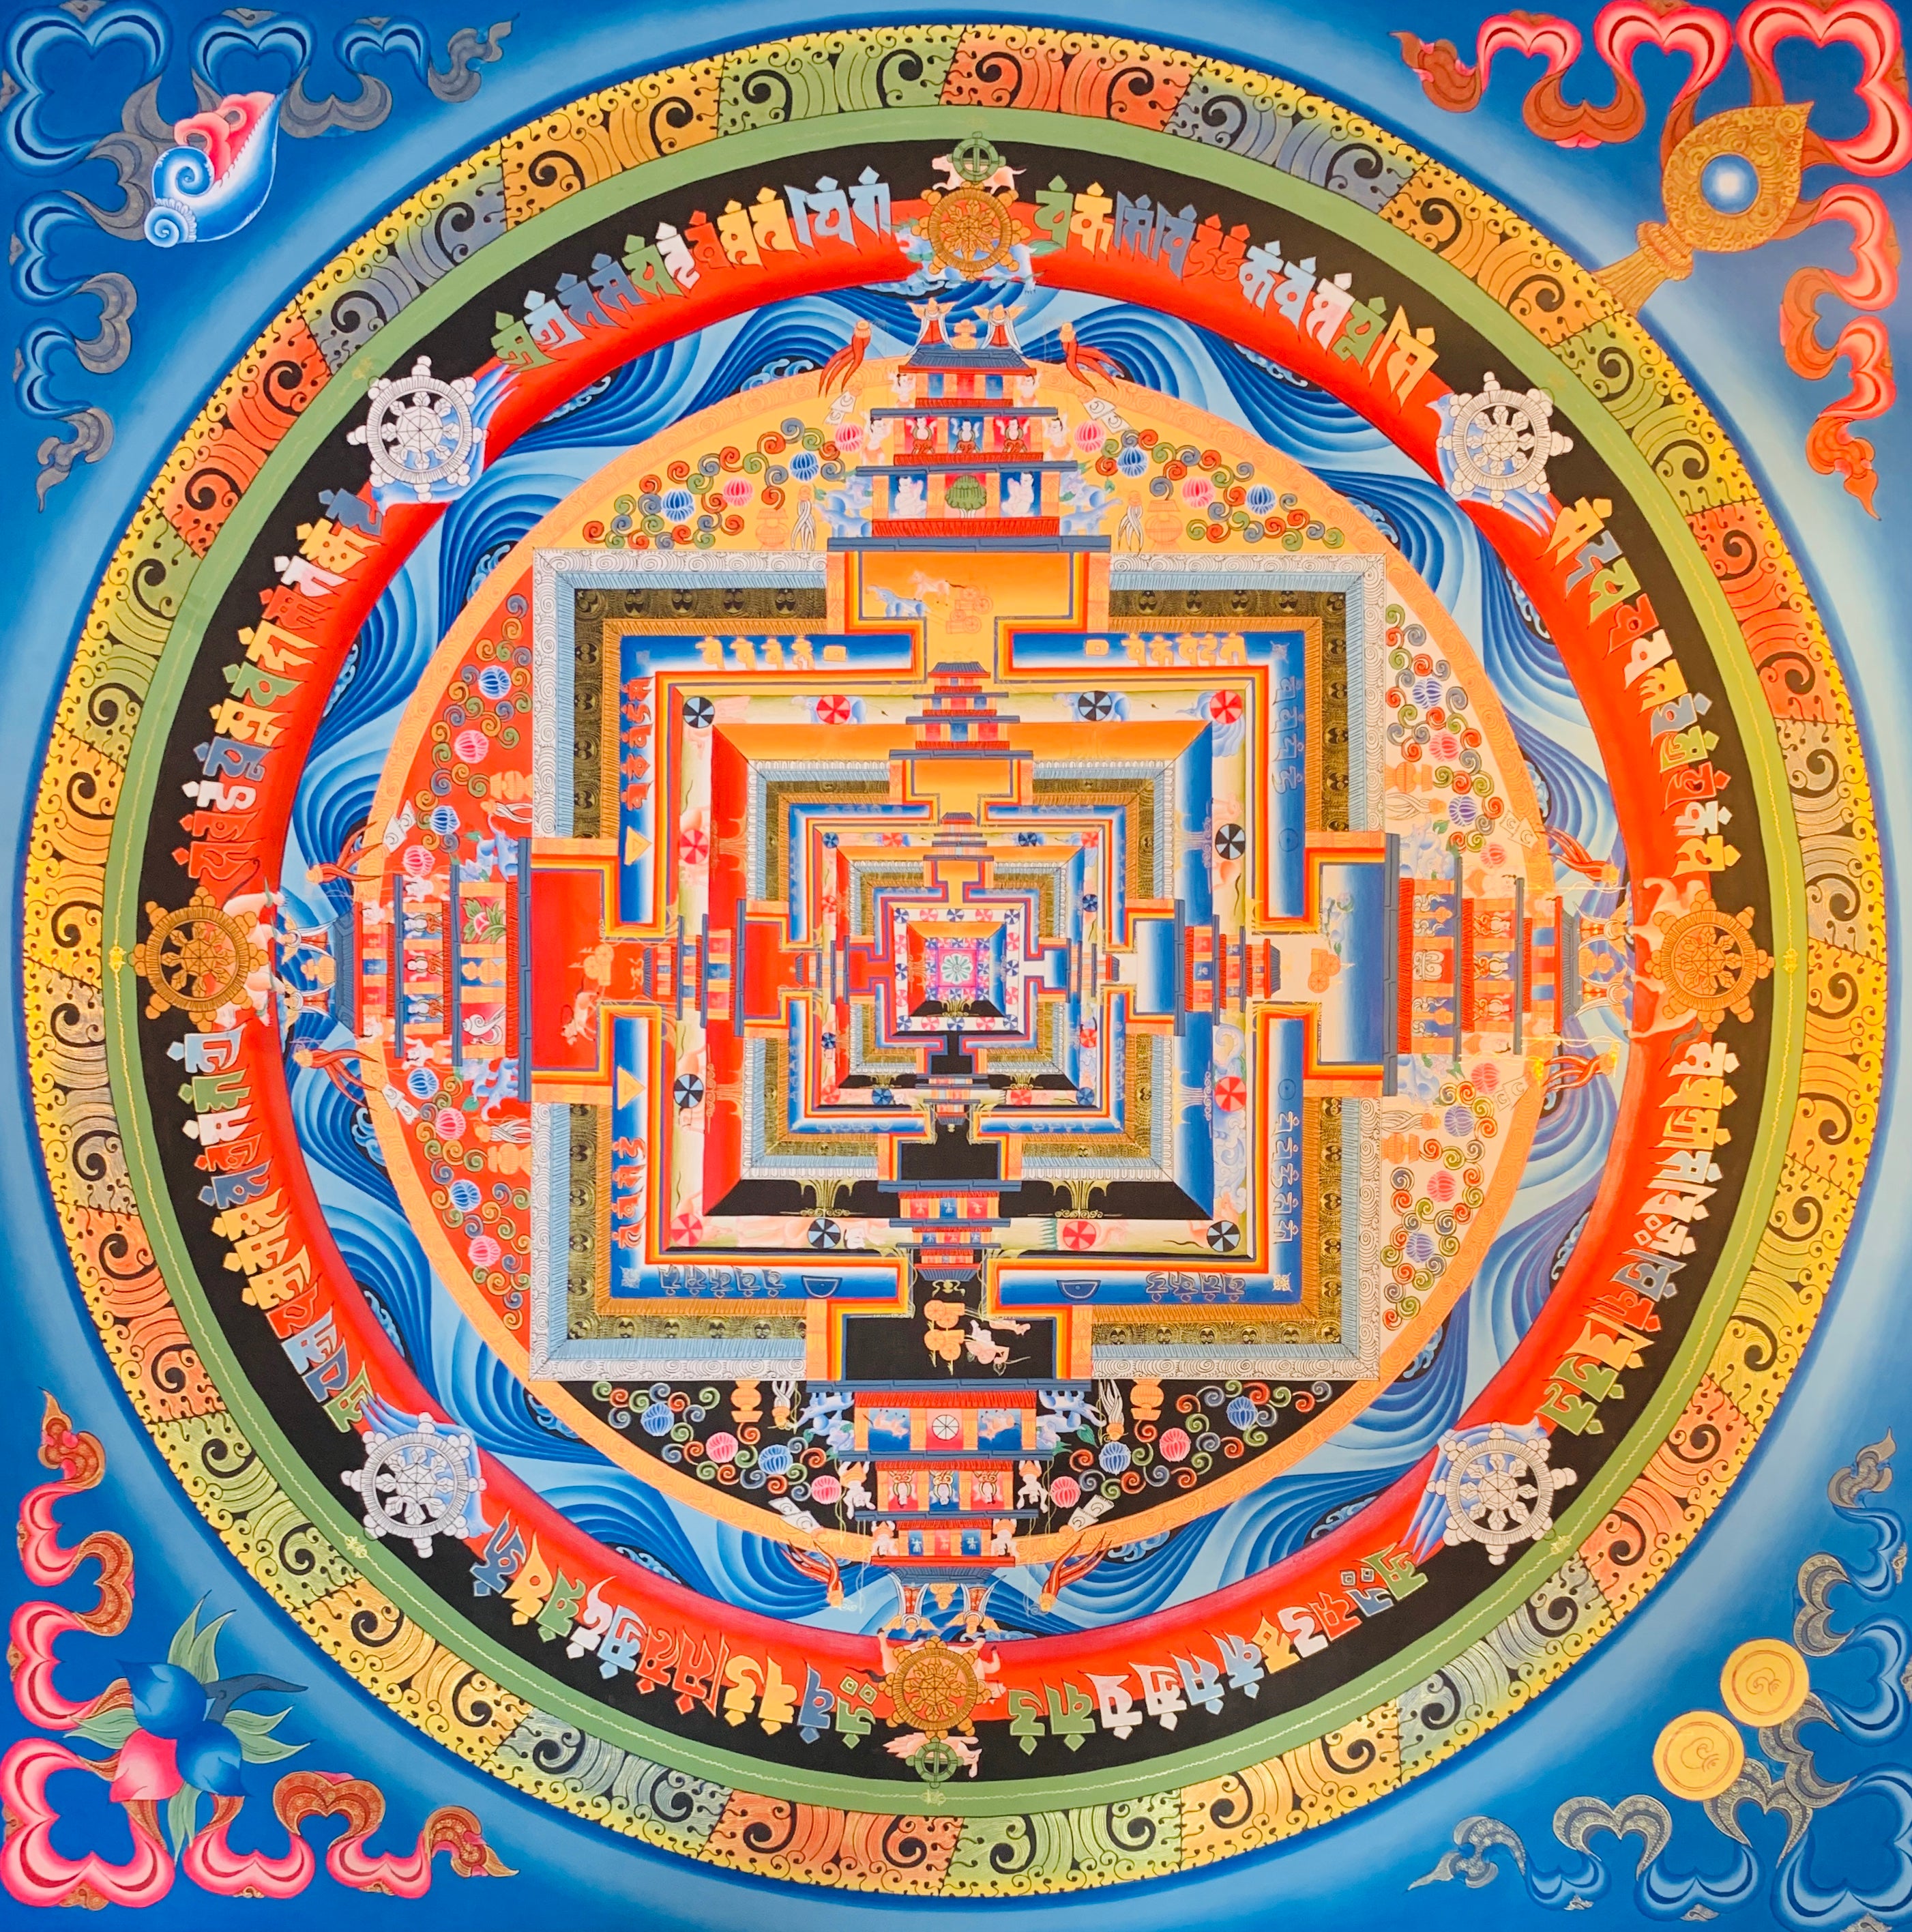 Kalachakra Mandala Thangka Painting 80*80 - The Thangka